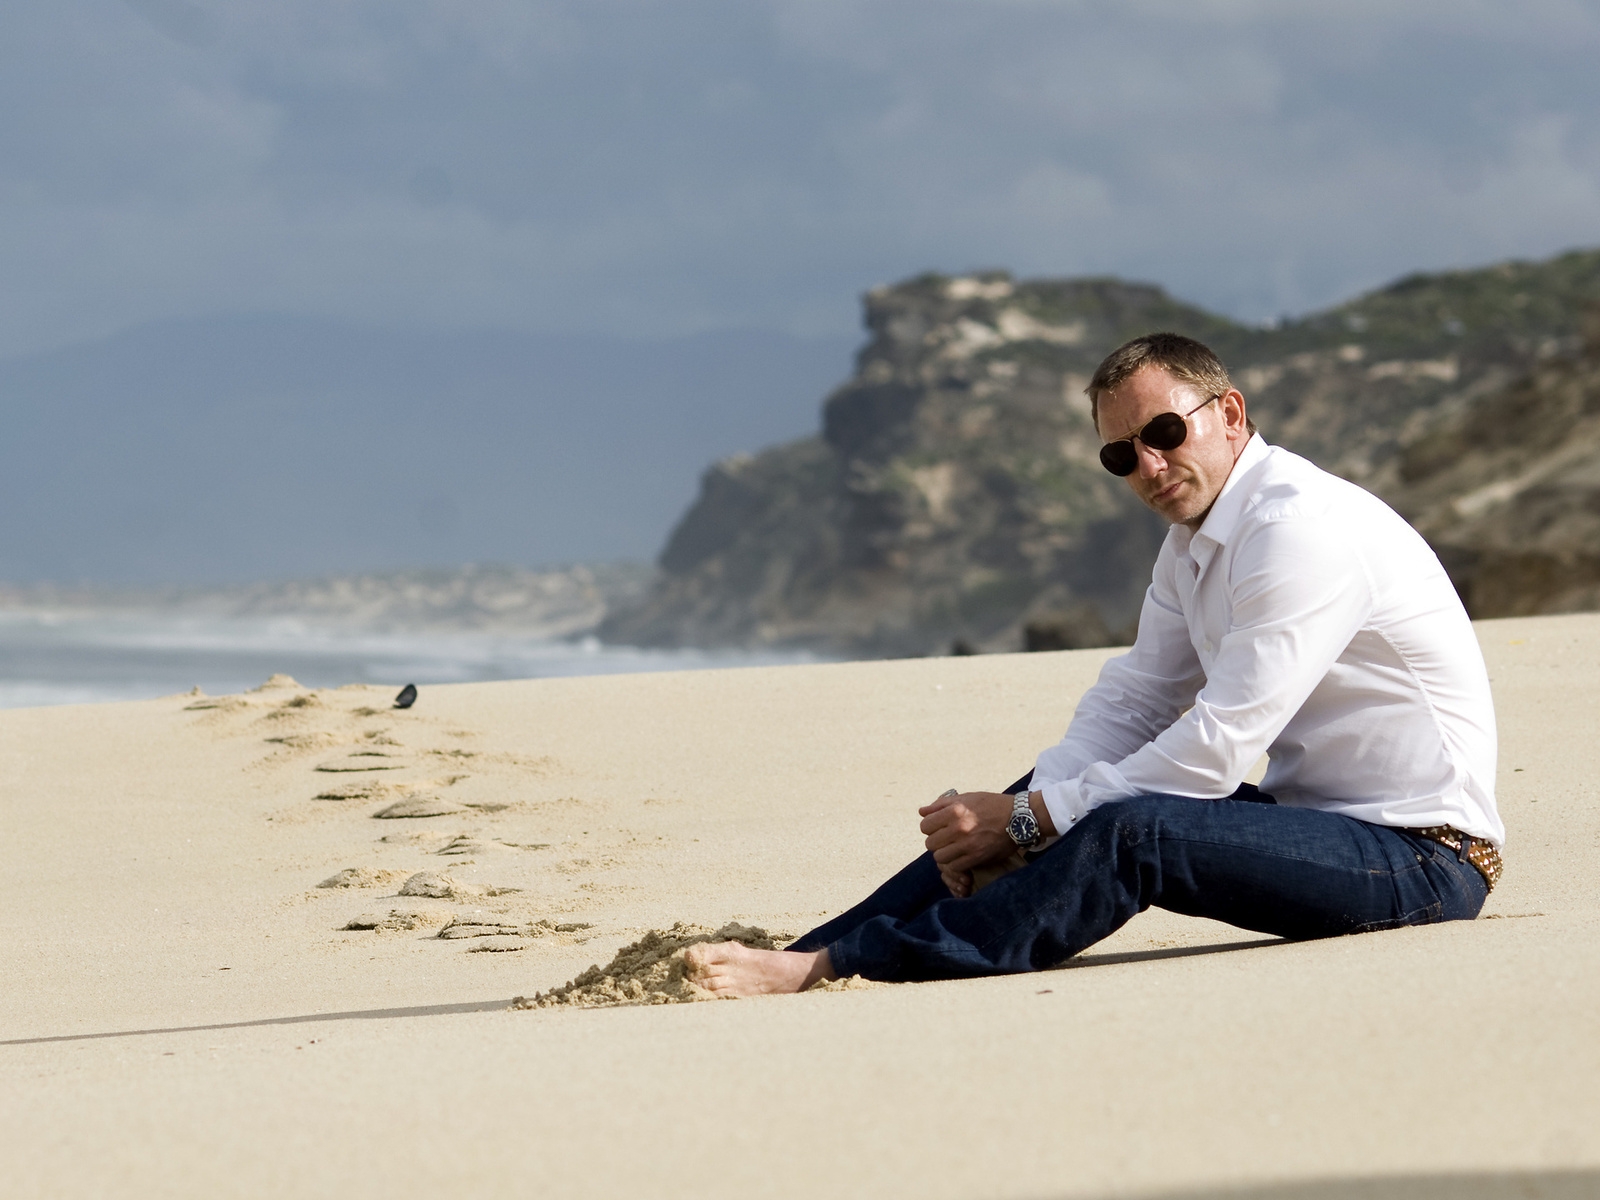 Daniel Craig on the Beach 1600 x 1200 Wallpaper